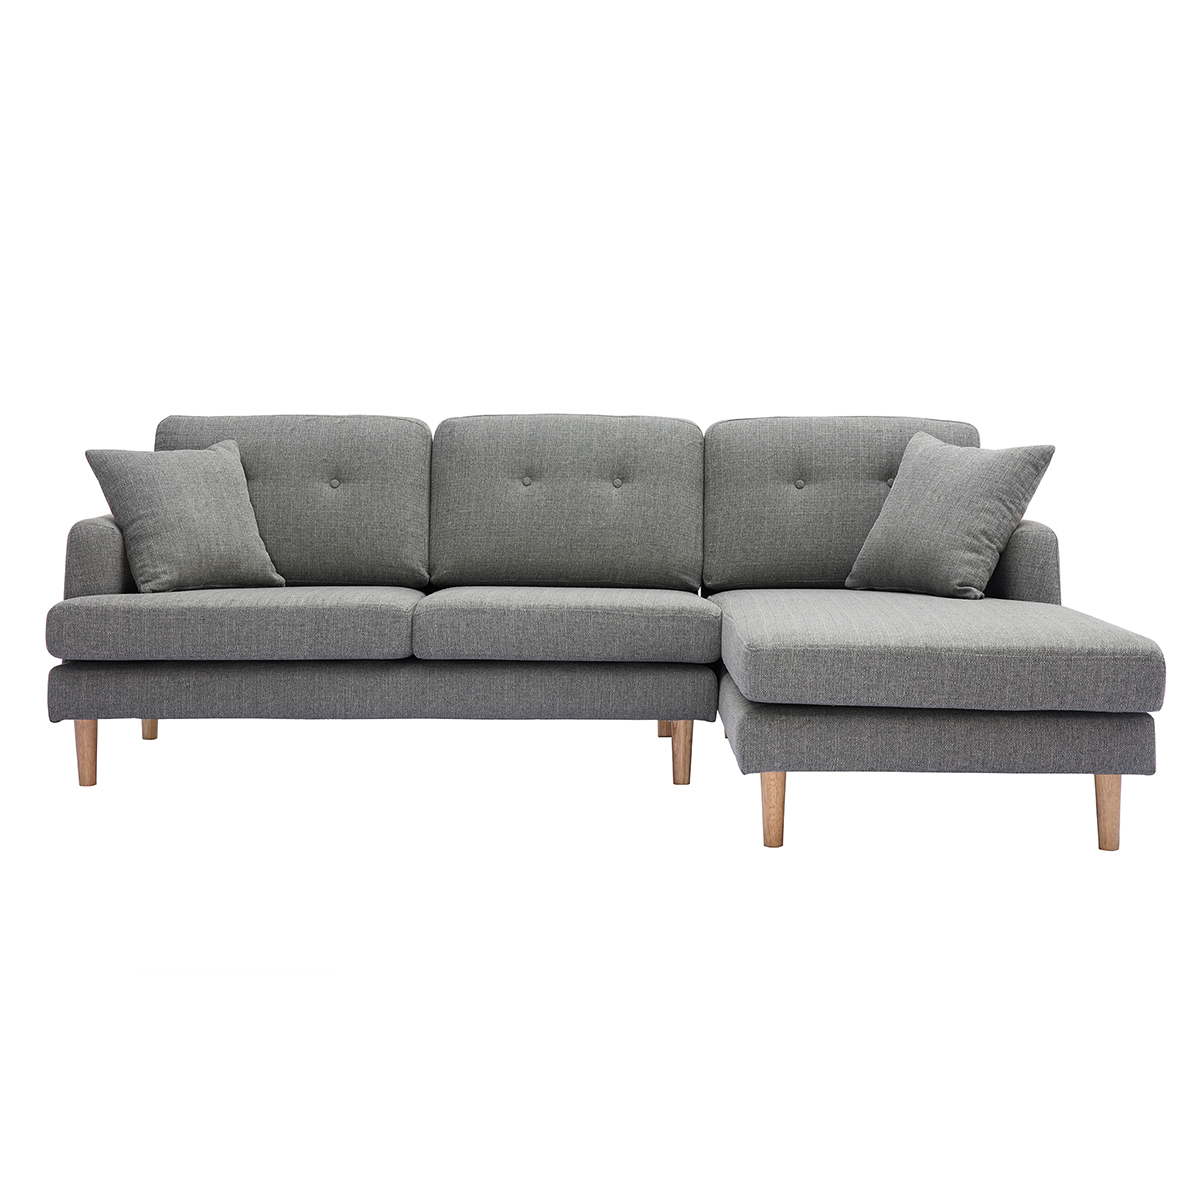 Canapé d'angle droit scandinave 4 places en tissu gris clair et bois clair CODDY vue1